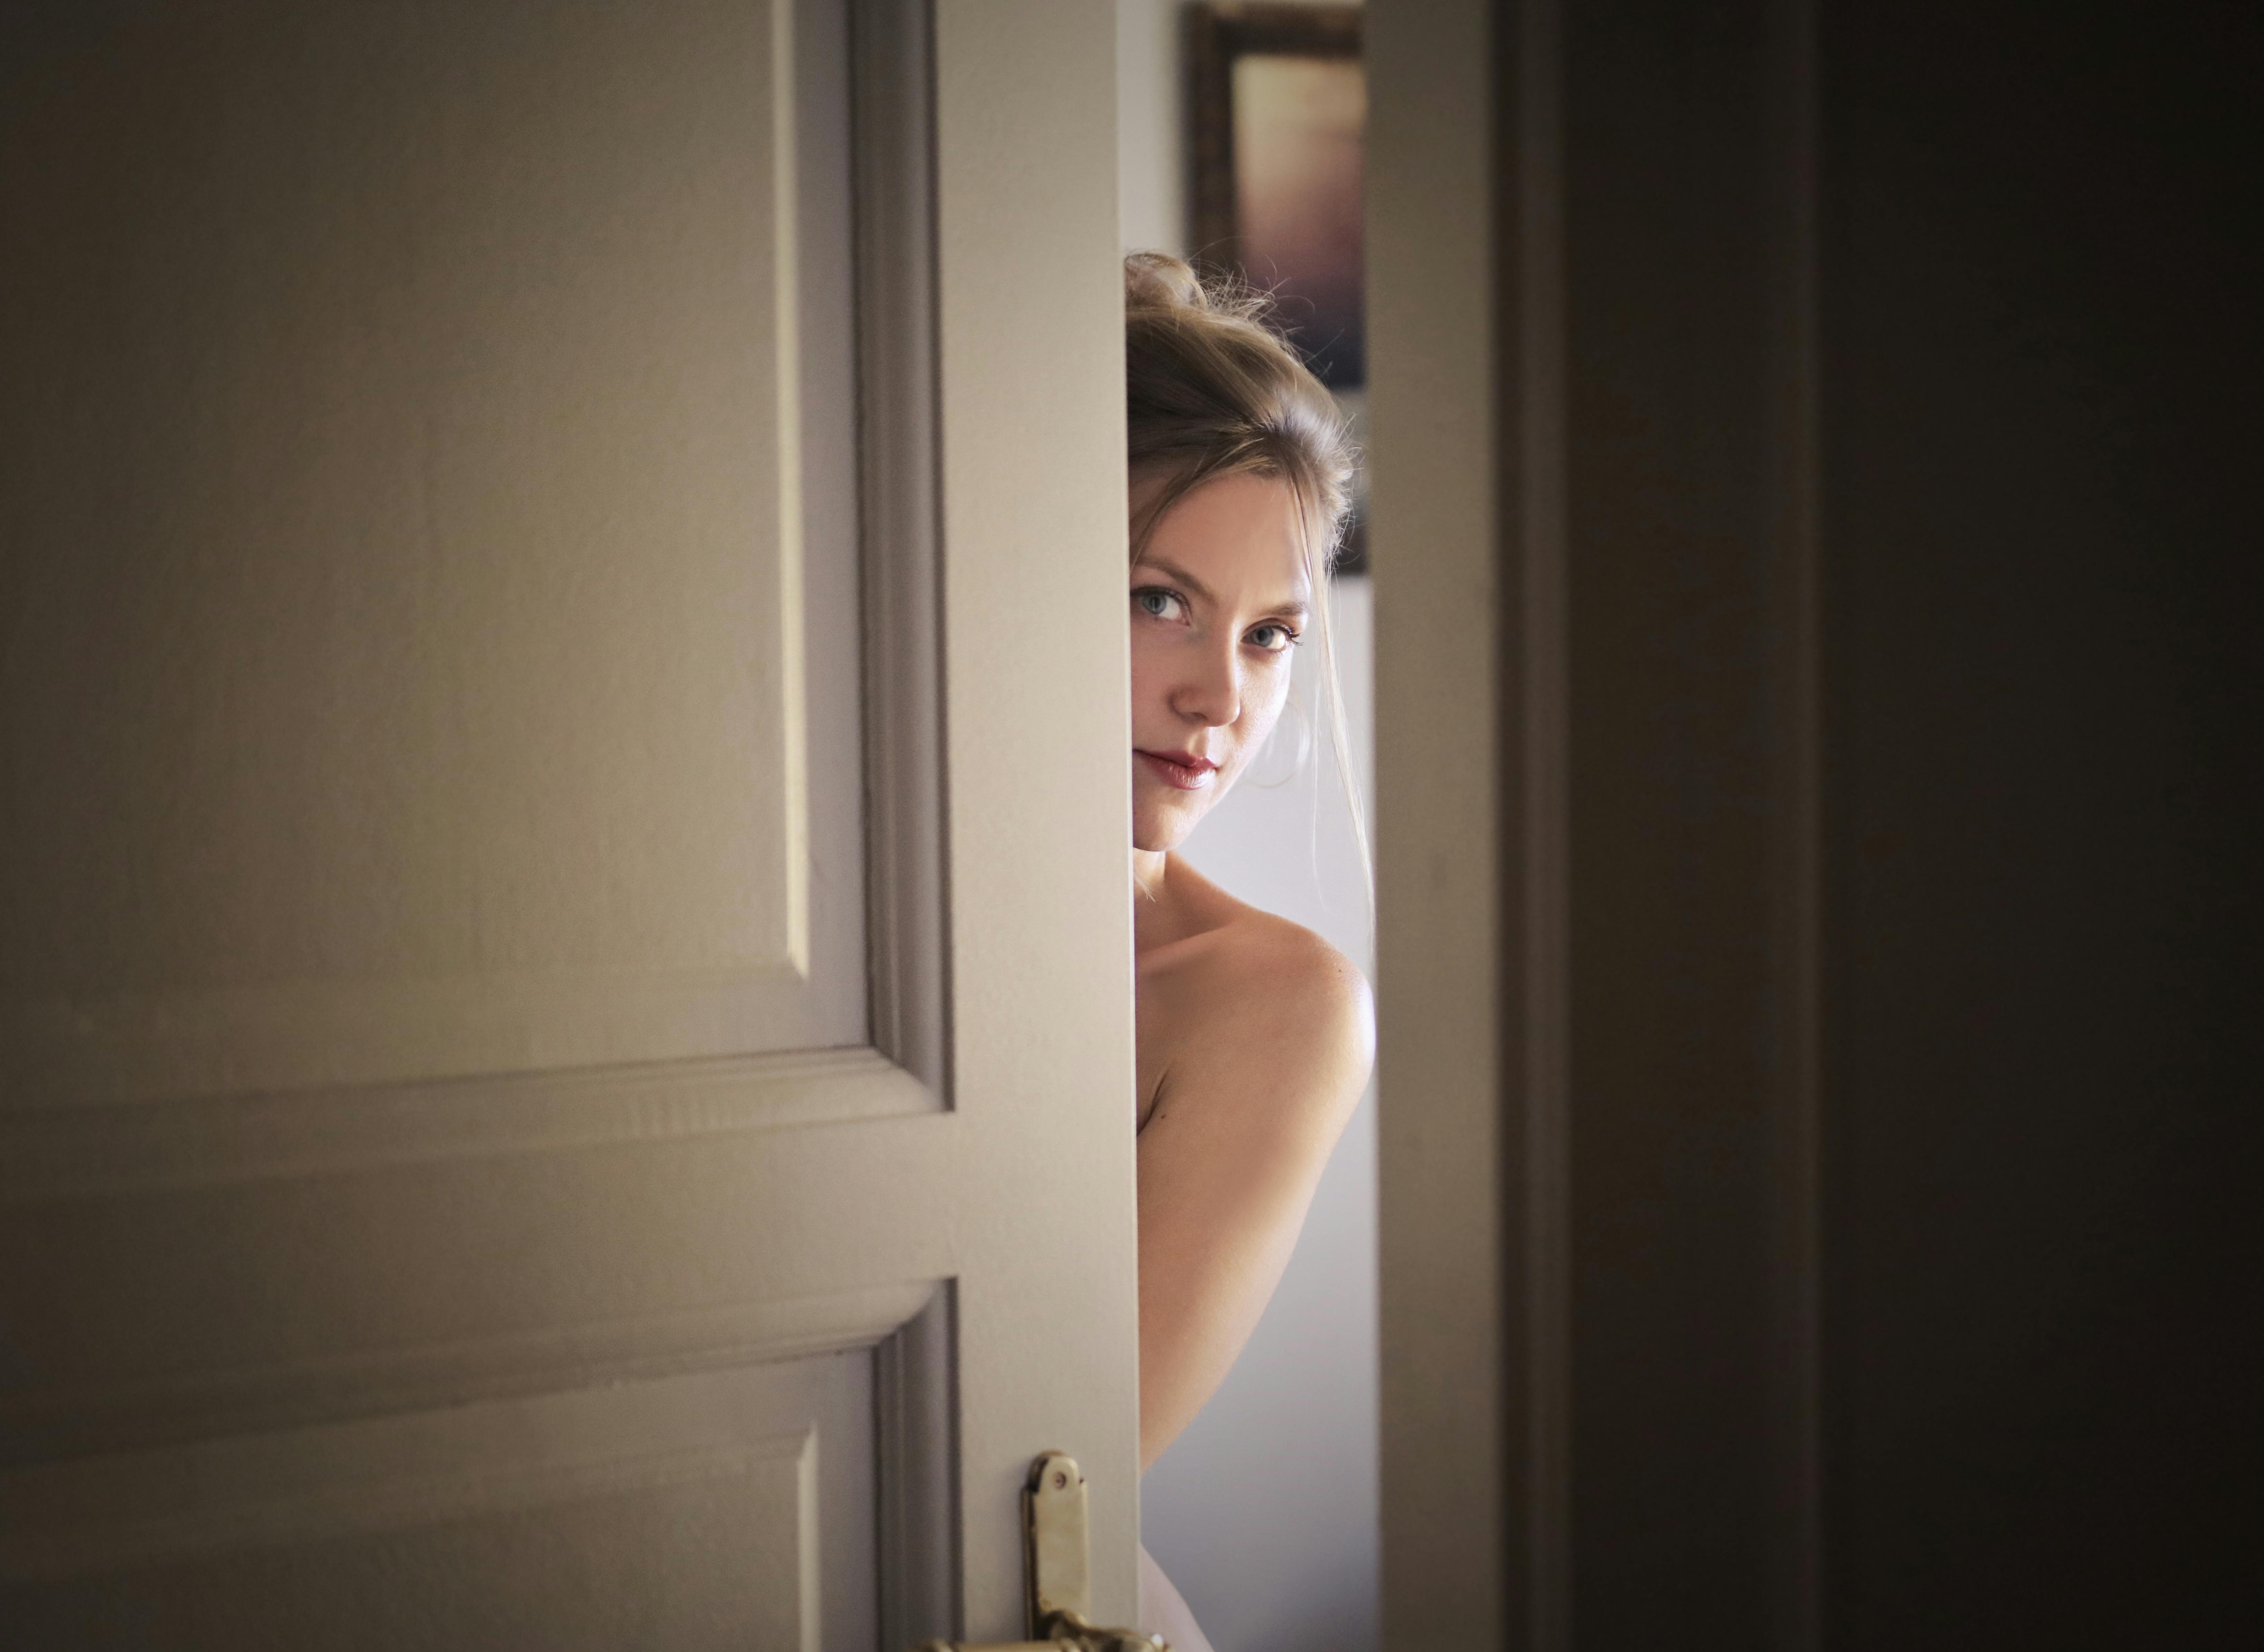 Woman behind the door | Source: Pexels